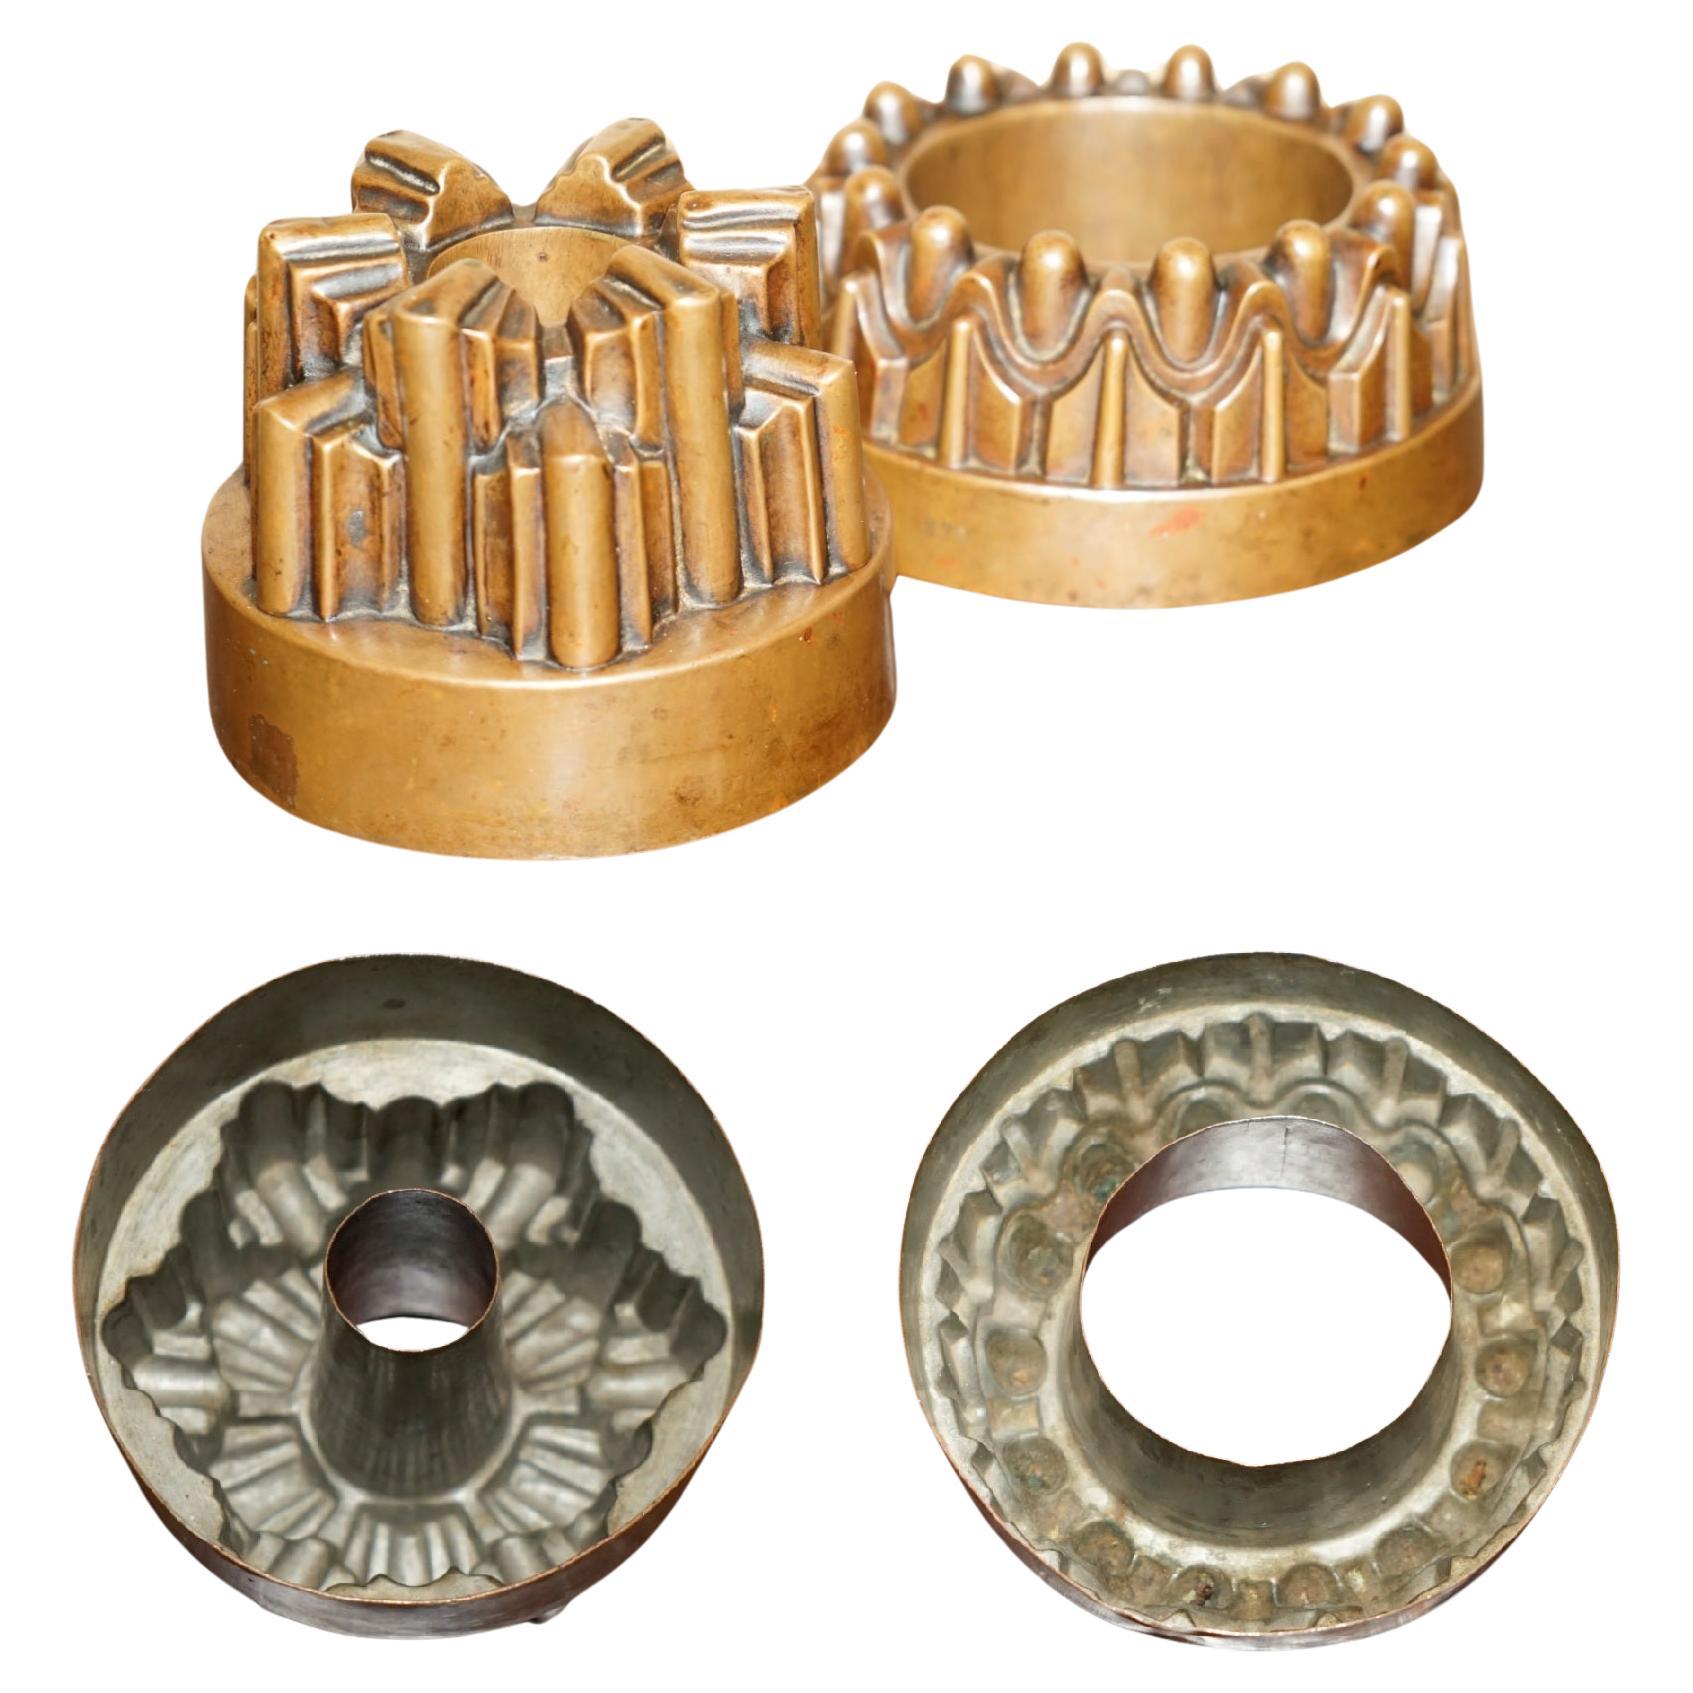 Wir freuen uns, ein Paar viktorianischer Kupfer-Geleeformen zum Verkauf anbieten zu können.

Ein sehr gut aussehendes und dekoratives Paar, das für den vorgesehenen Zweck oder zur Dekoration verwendet werden kann, was heutzutage häufiger der Fall